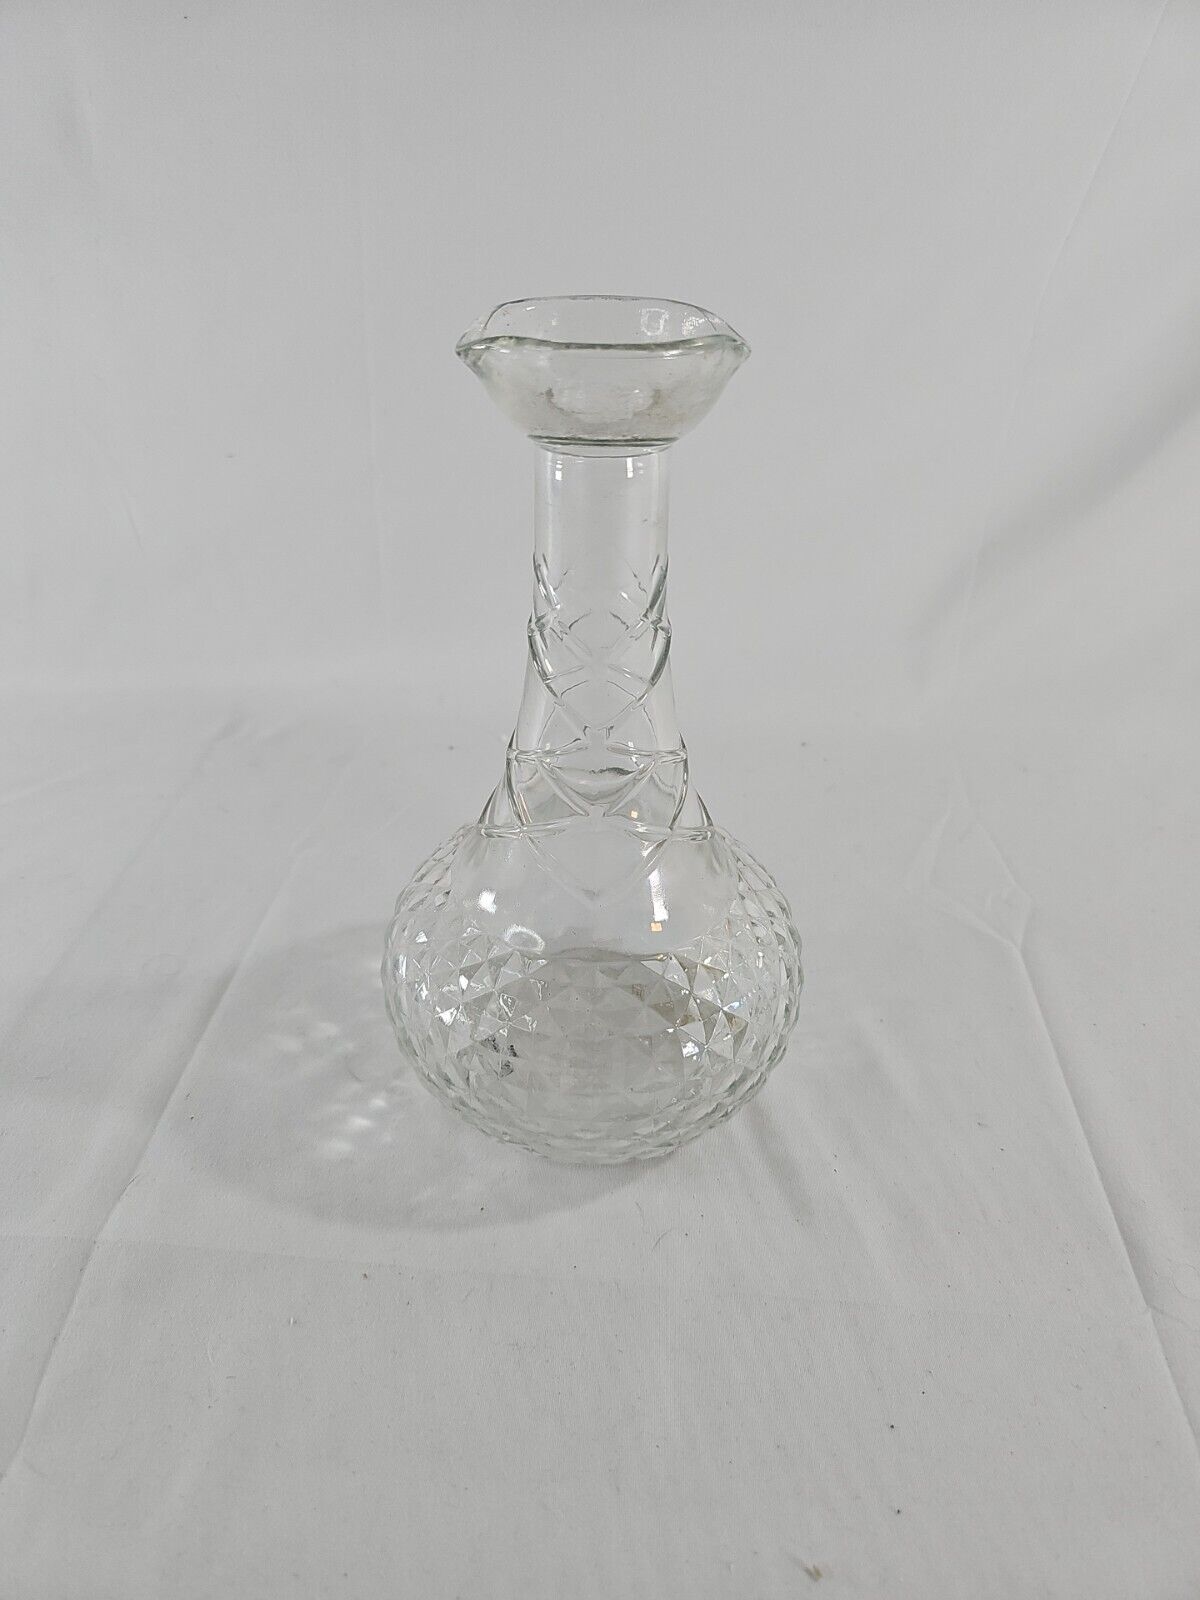 Vintage Smirnoff Vodka Glass Genie Decanter Bottle - EMPTY BOTTLE